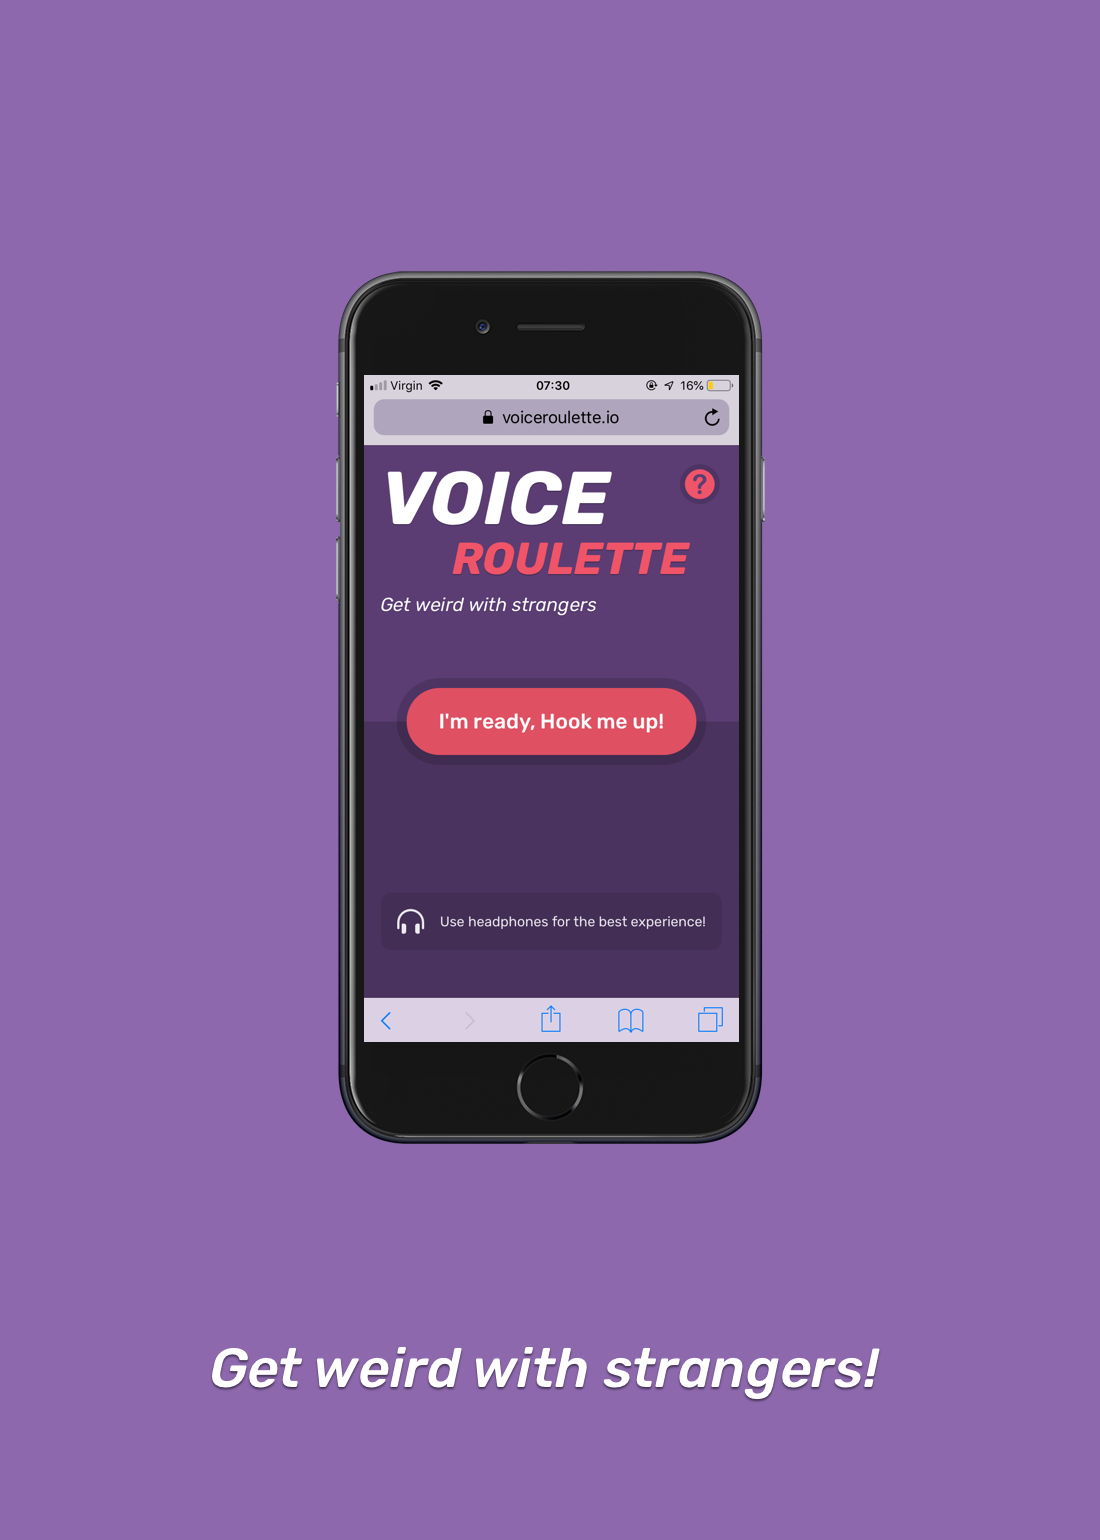 Voice chat roulette